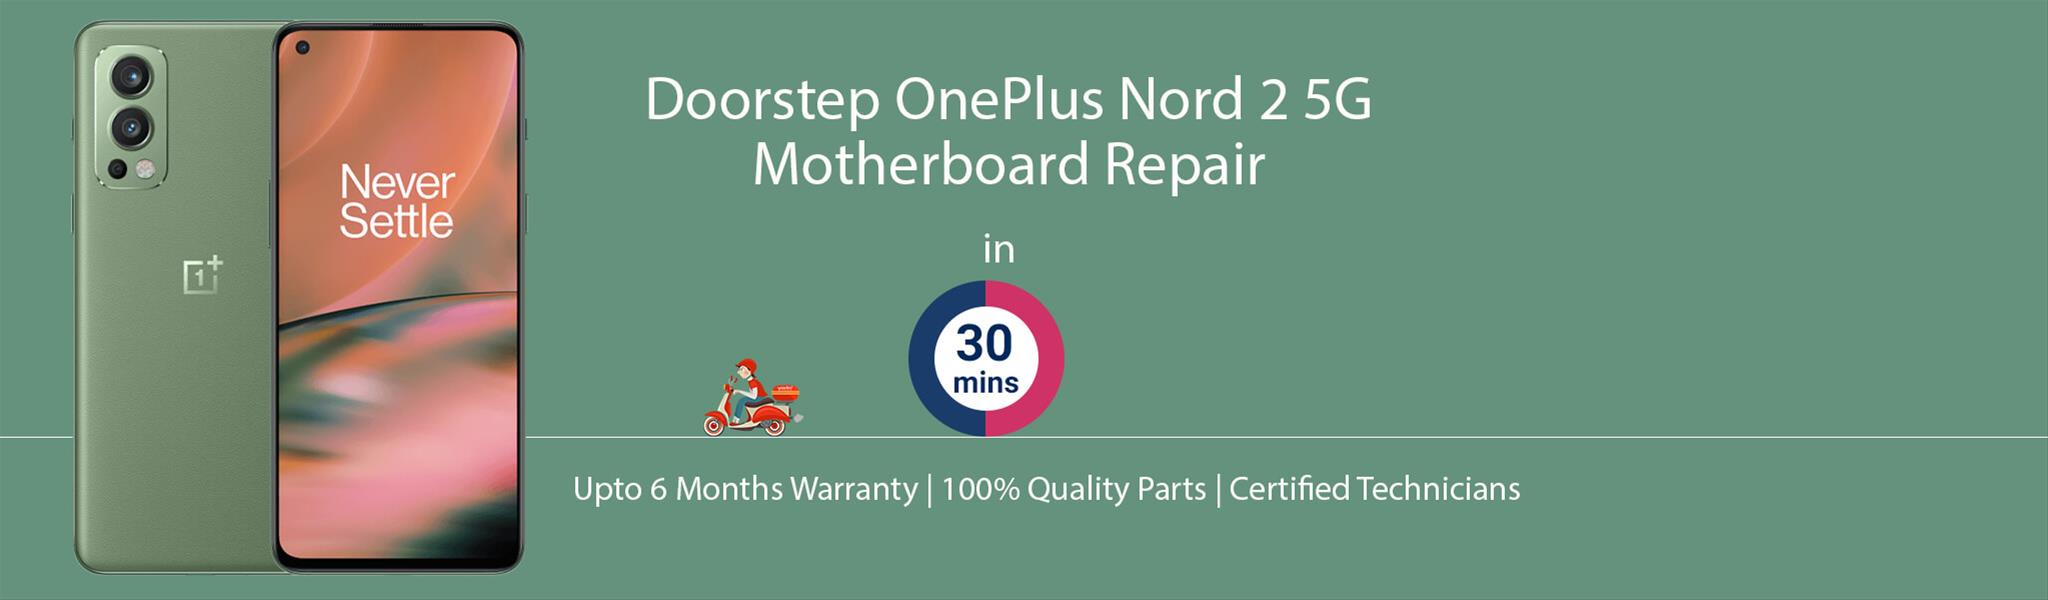 oneplus-nord-2-5g-motherboard-repair.jpg